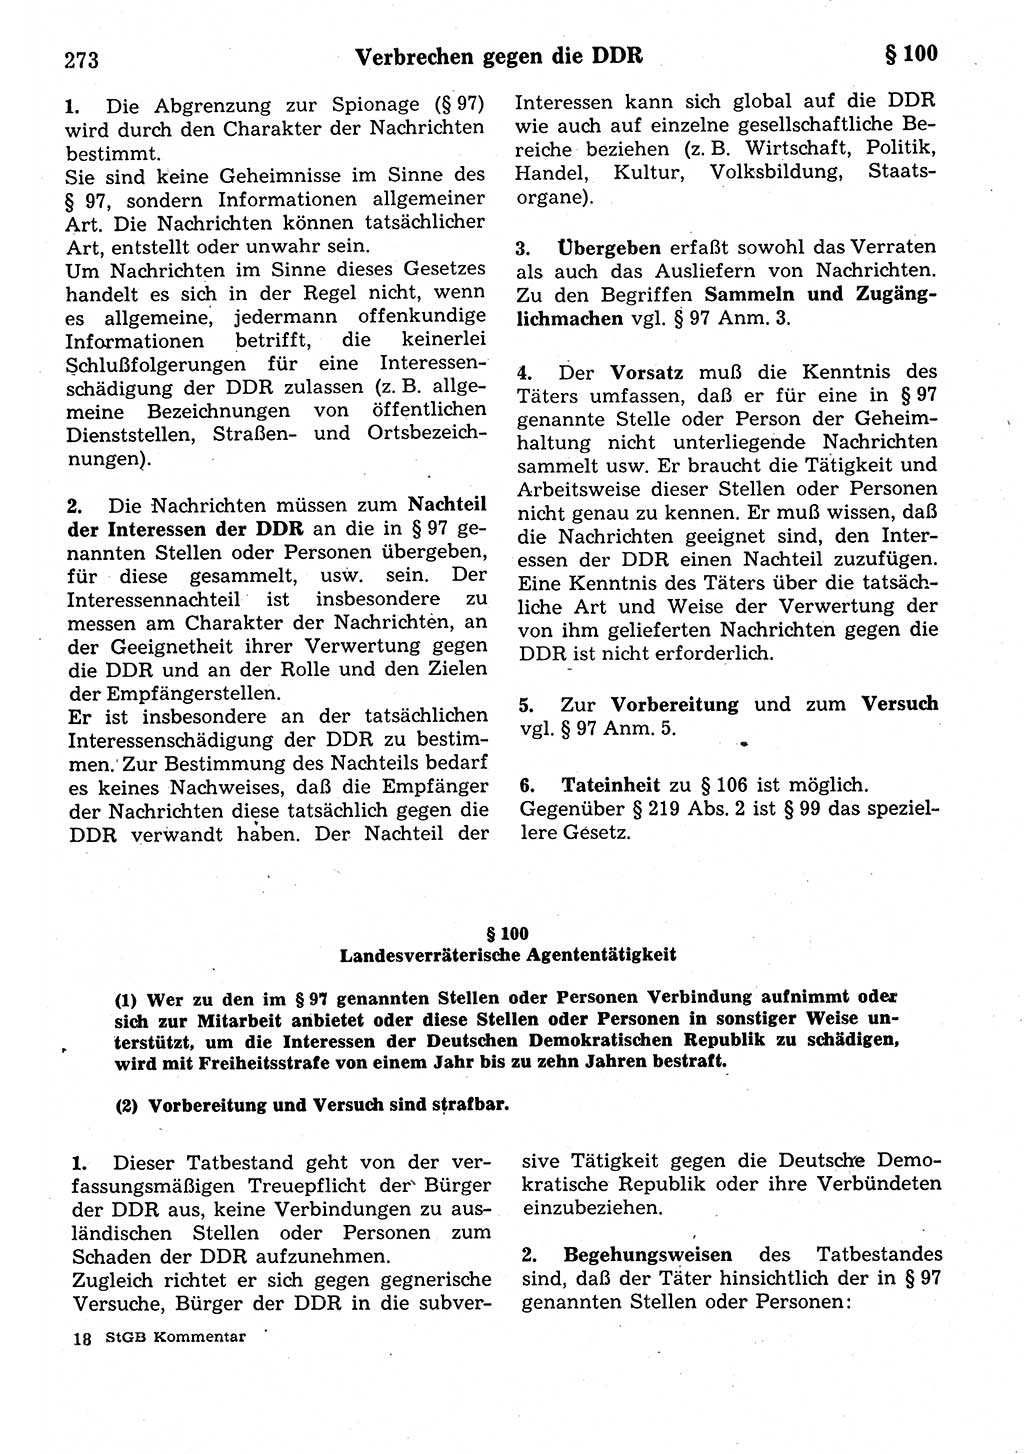 Strafrecht der Deutschen Demokratischen Republik (DDR), Kommentar zum Strafgesetzbuch (StGB) 1987, Seite 273 (Strafr. DDR Komm. StGB 1987, S. 273)